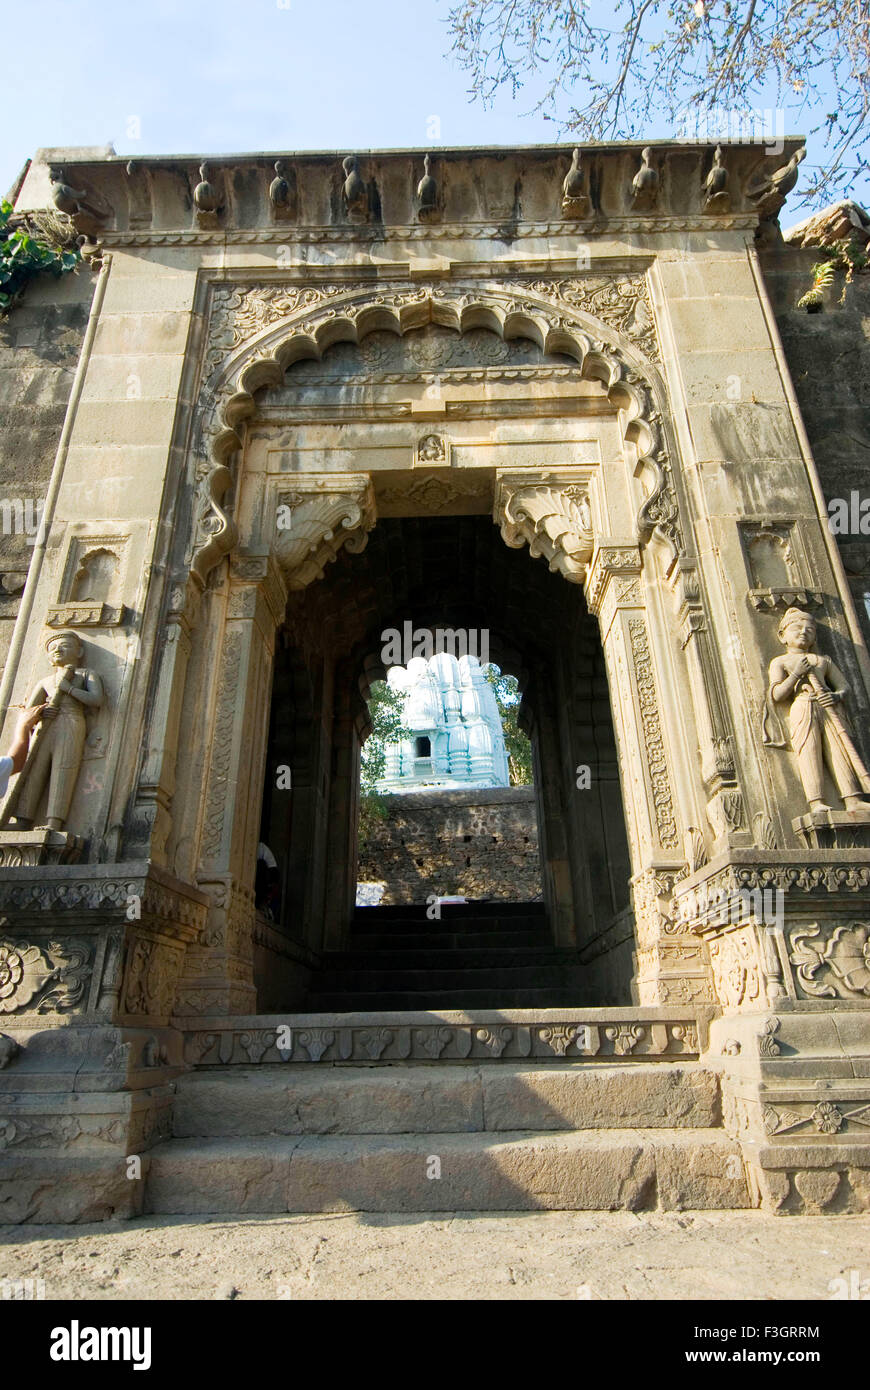 Bellamente tallado puerta del ghat de Maheshwar ; ; de Madhya Pradesh, India Foto de stock